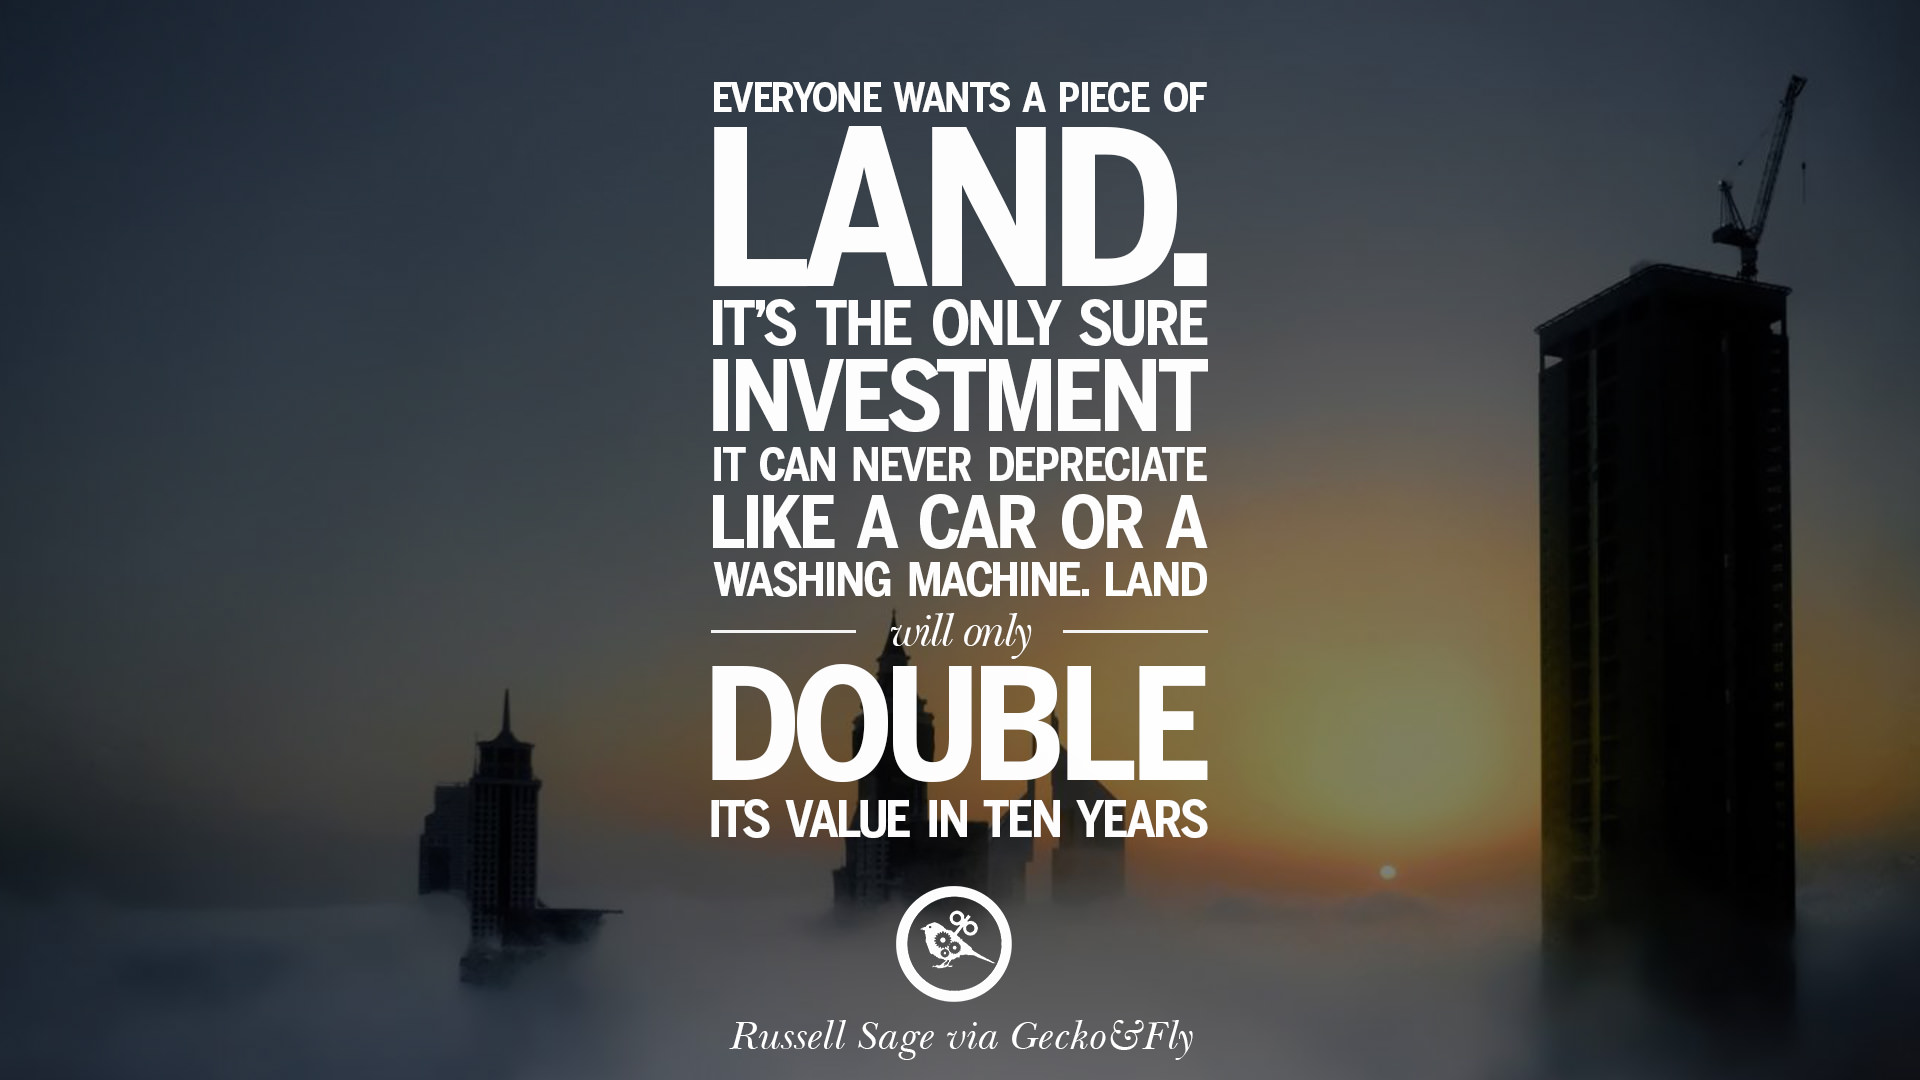 value investing quotes